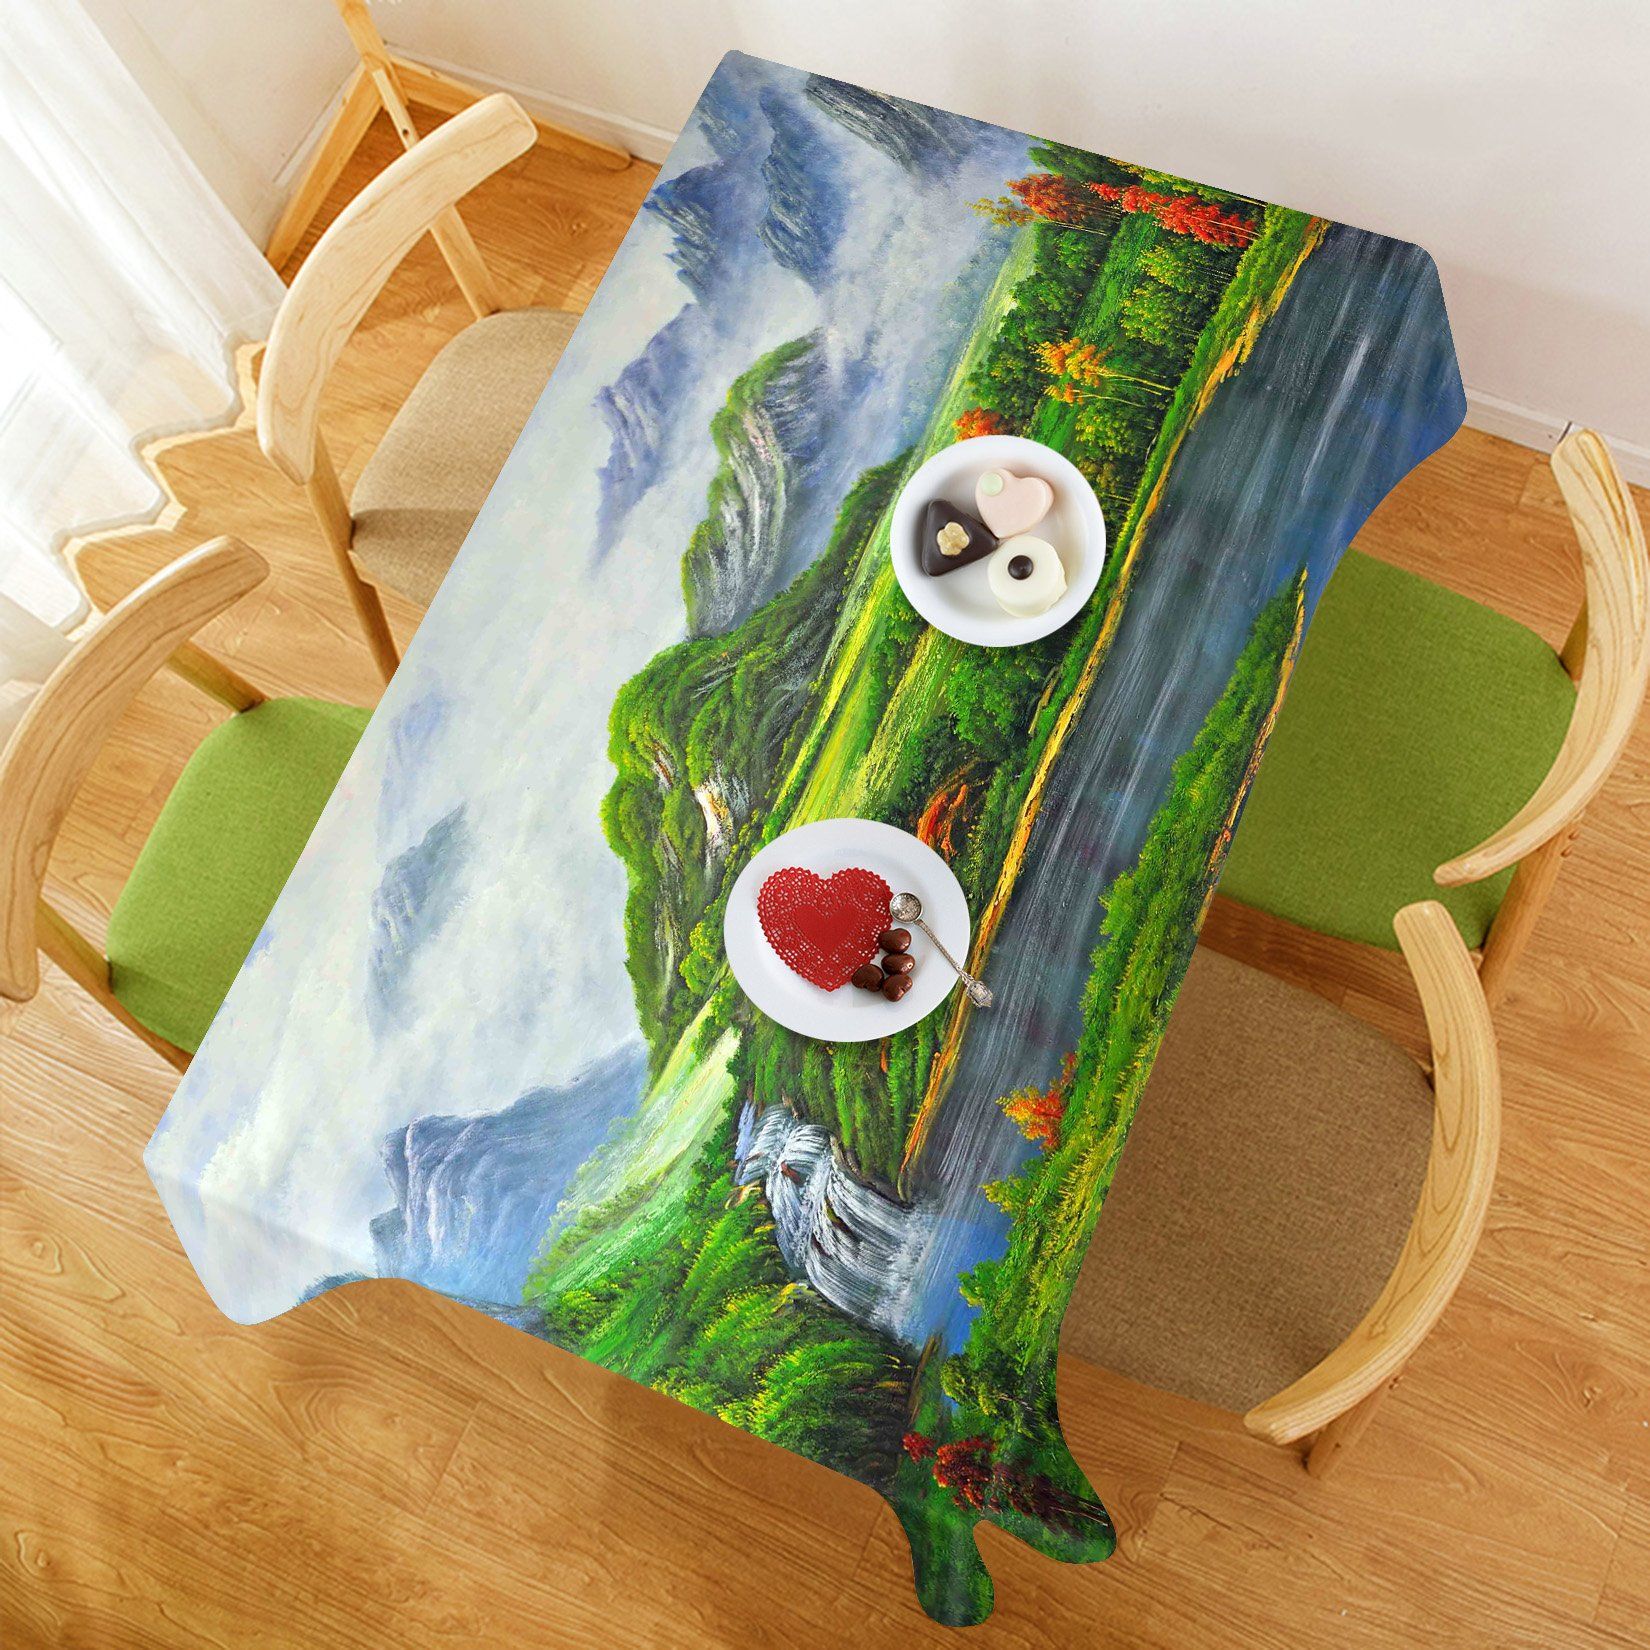 3D Mountain River Scenery 252 Tablecloths Wallpaper AJ Wallpaper 